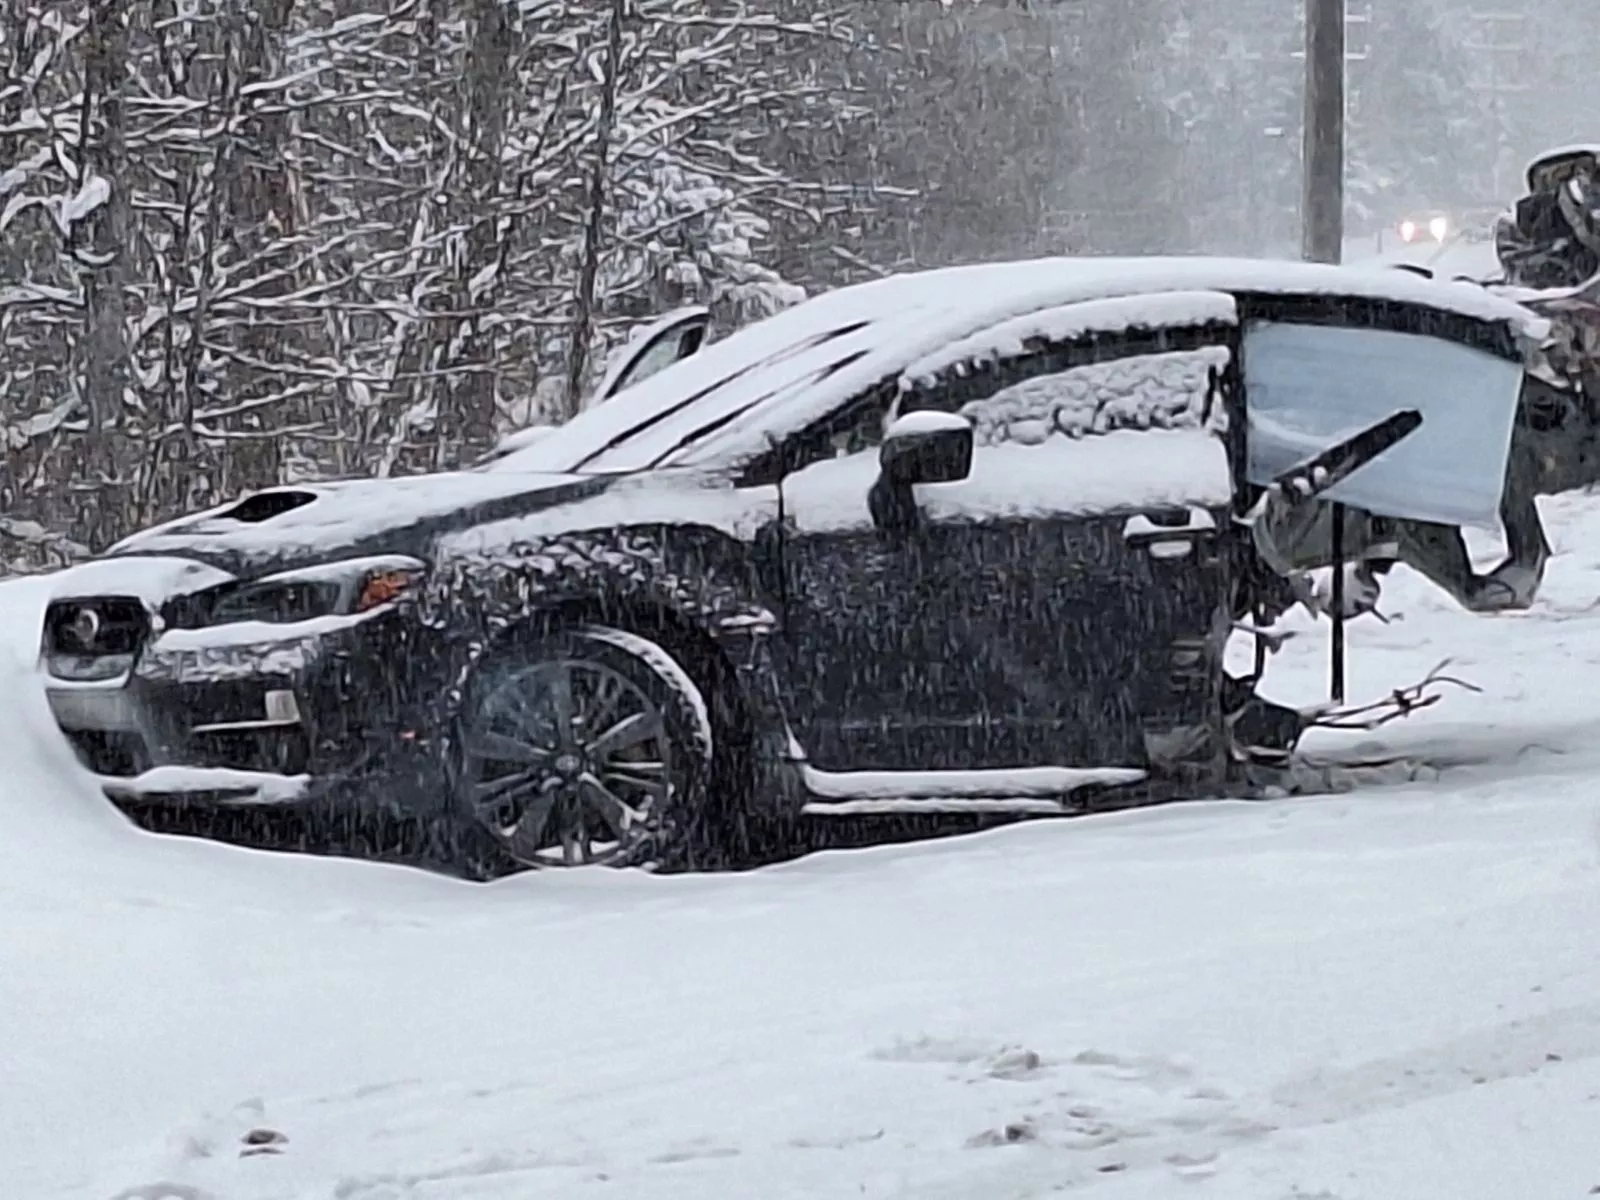 Neve, trânsito e uma ultrapassagem mal medida: acidente de Subaru WRX torna-se exemplo dos perigos na condução em condições extremas